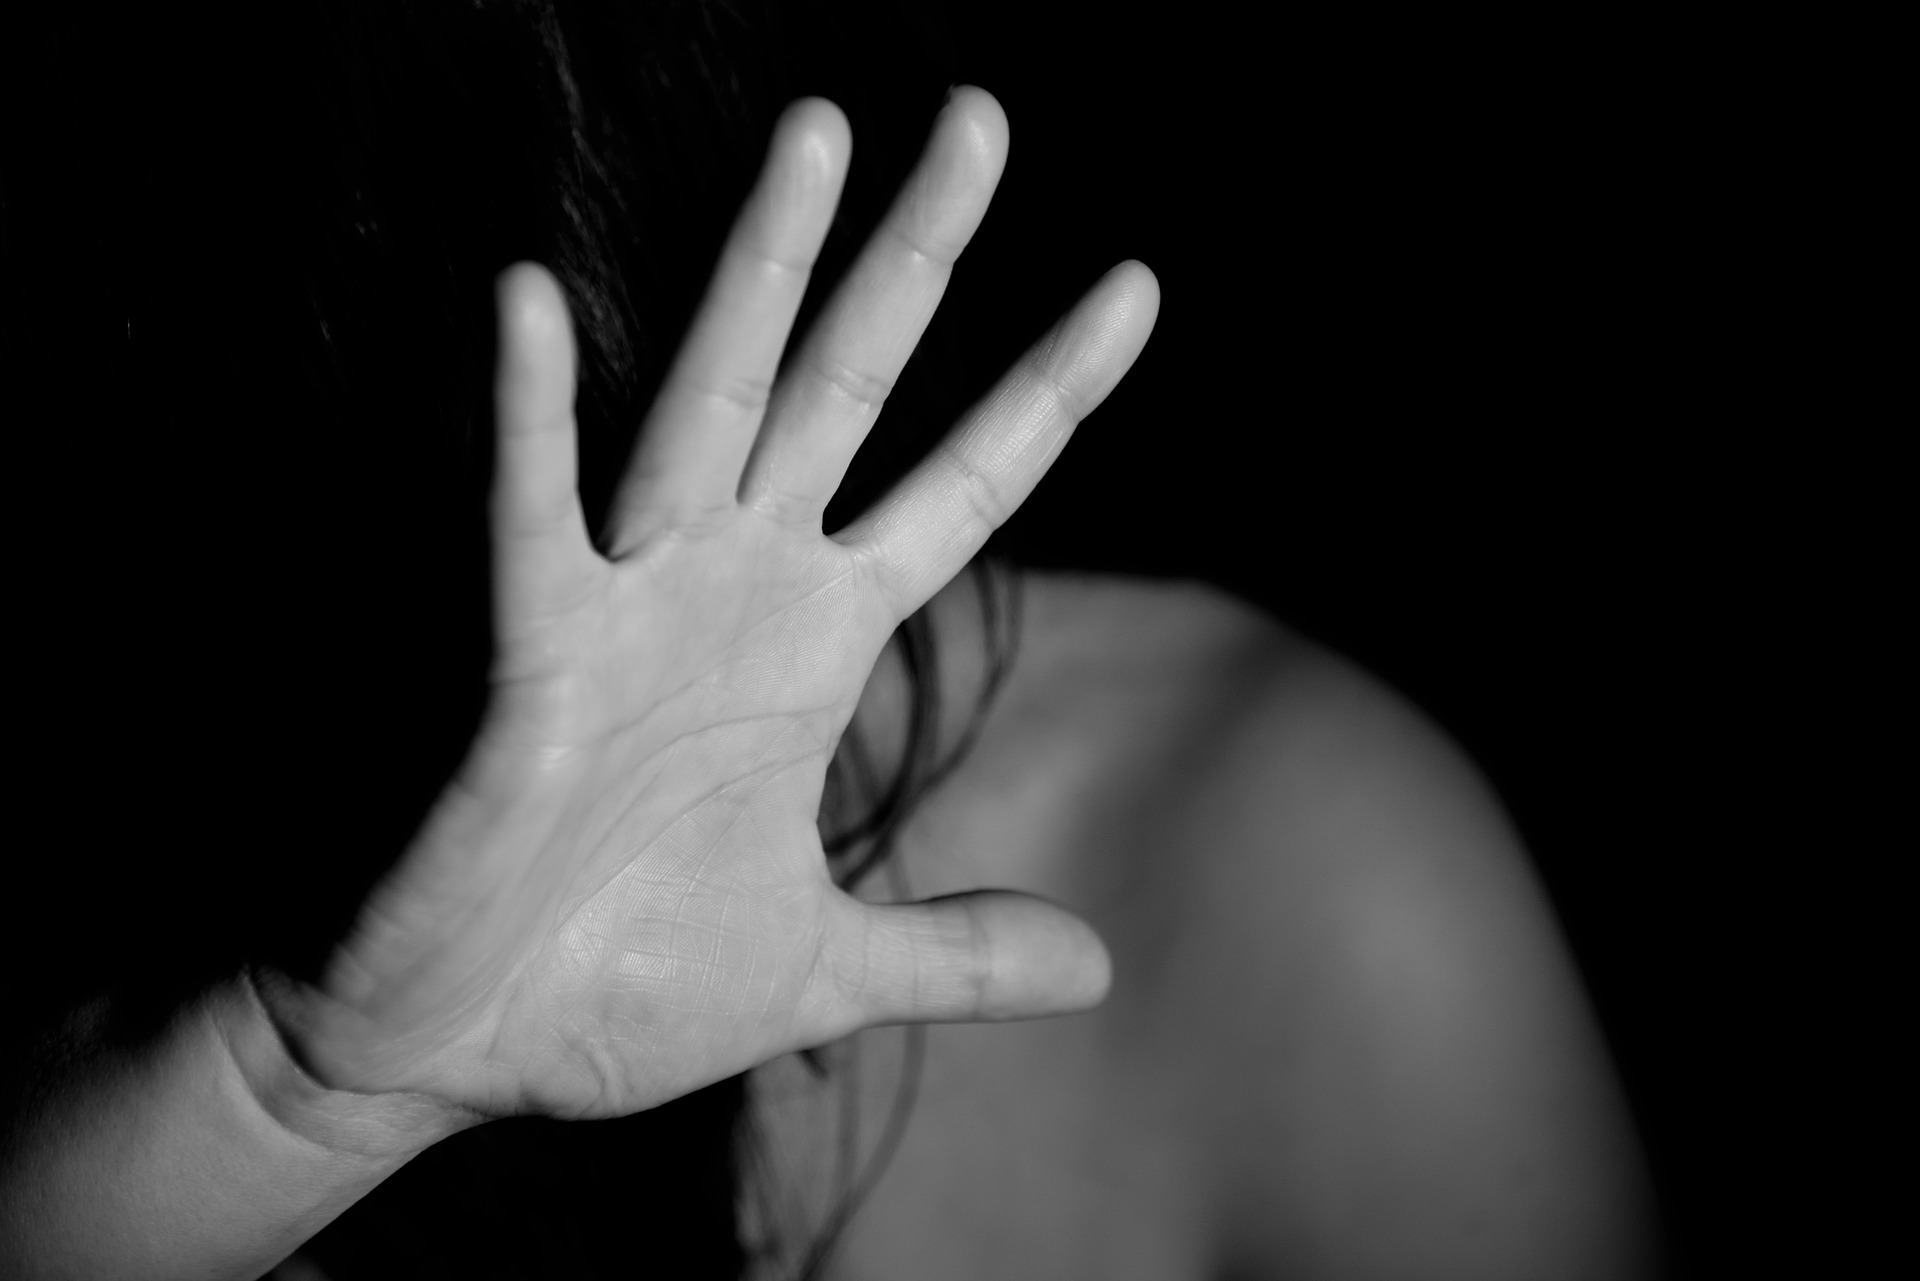 Opfer von Vergewaltigungen sollen „Erlebende“ genannt werden – Vorschlag von Kulturwissenschaftlerin kritisiert